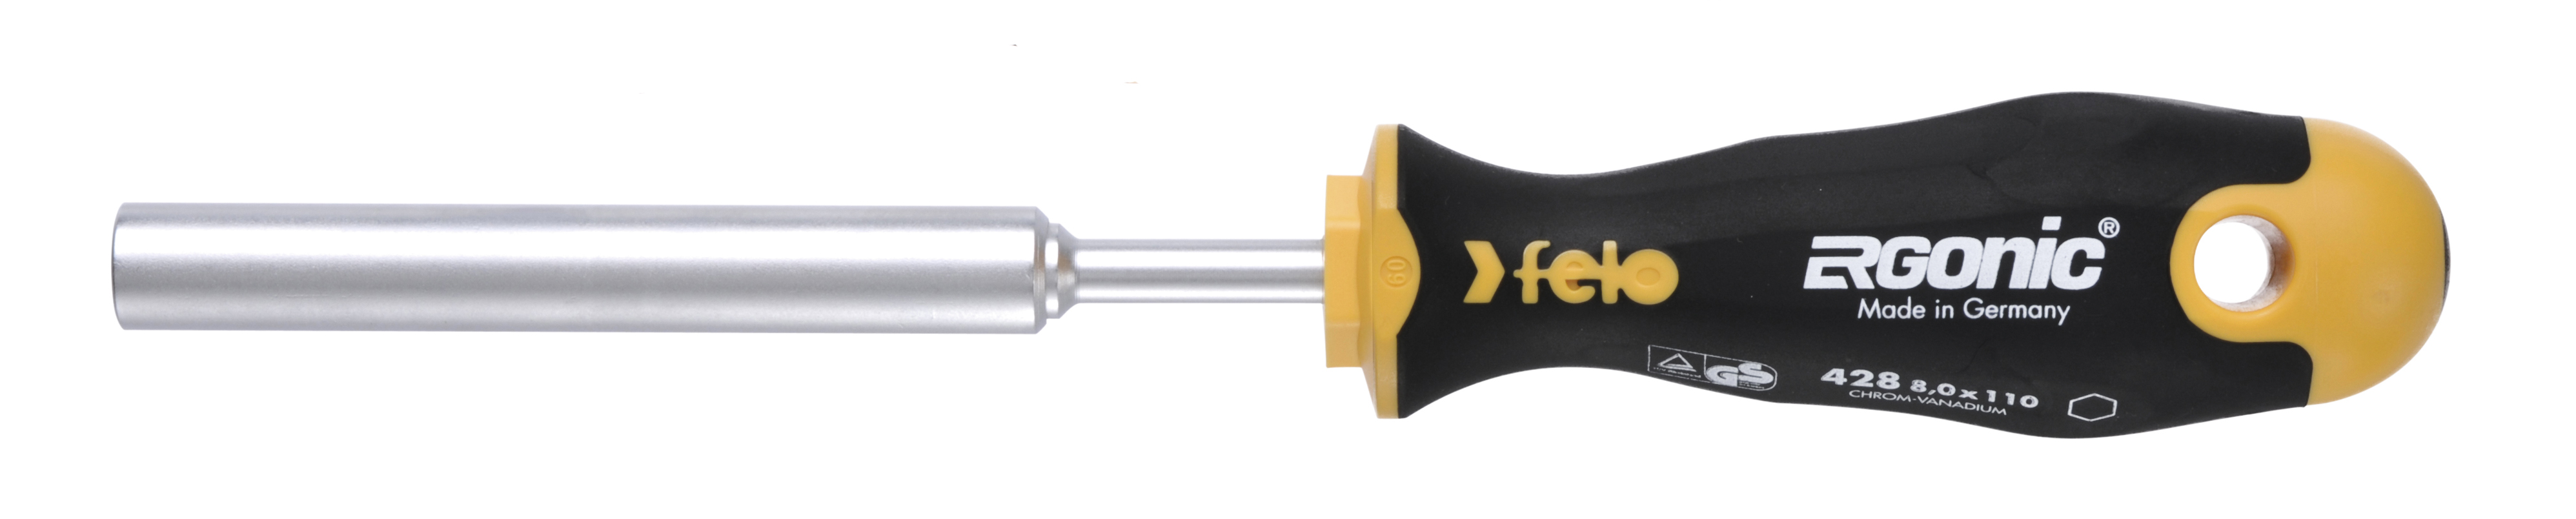 Отвертка Felo Ergonic M-TEC 42806030 торцевой ключ 6,0X110 диэлектрический ключ отвёртка izeltas 4773190060 1000v торцевой 6мм длина 220 мм